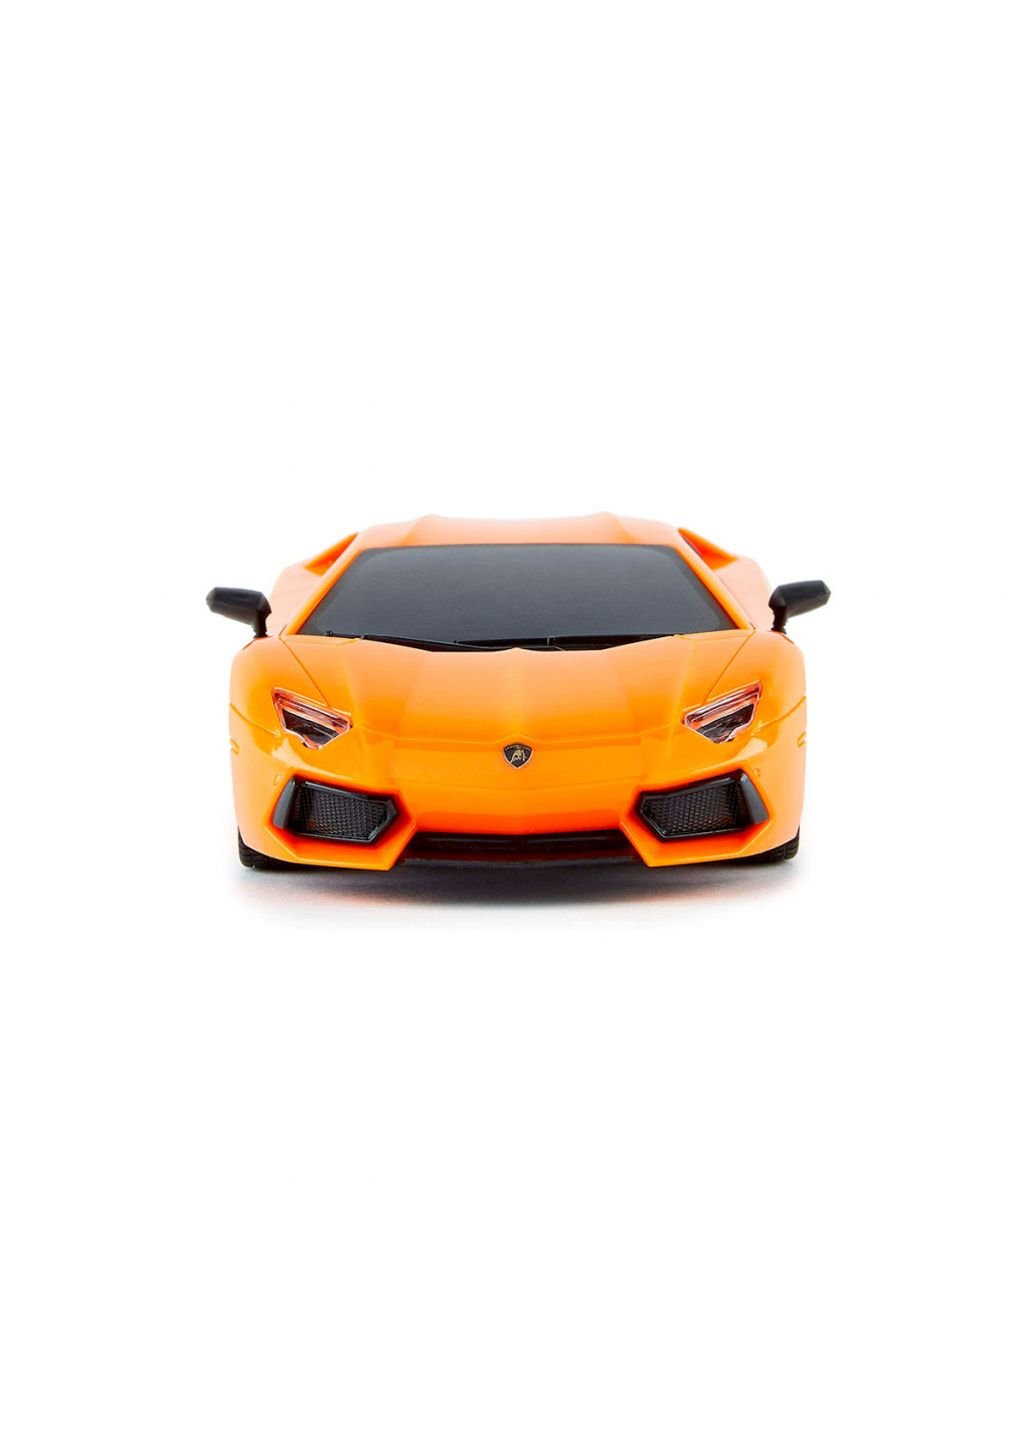 Радиоуправляемая игрушка Lamborghini Aventador LP 700-4 (1:24, 2.4Ghz, оранжевый) (124GLBO) KS Drive (254082932)